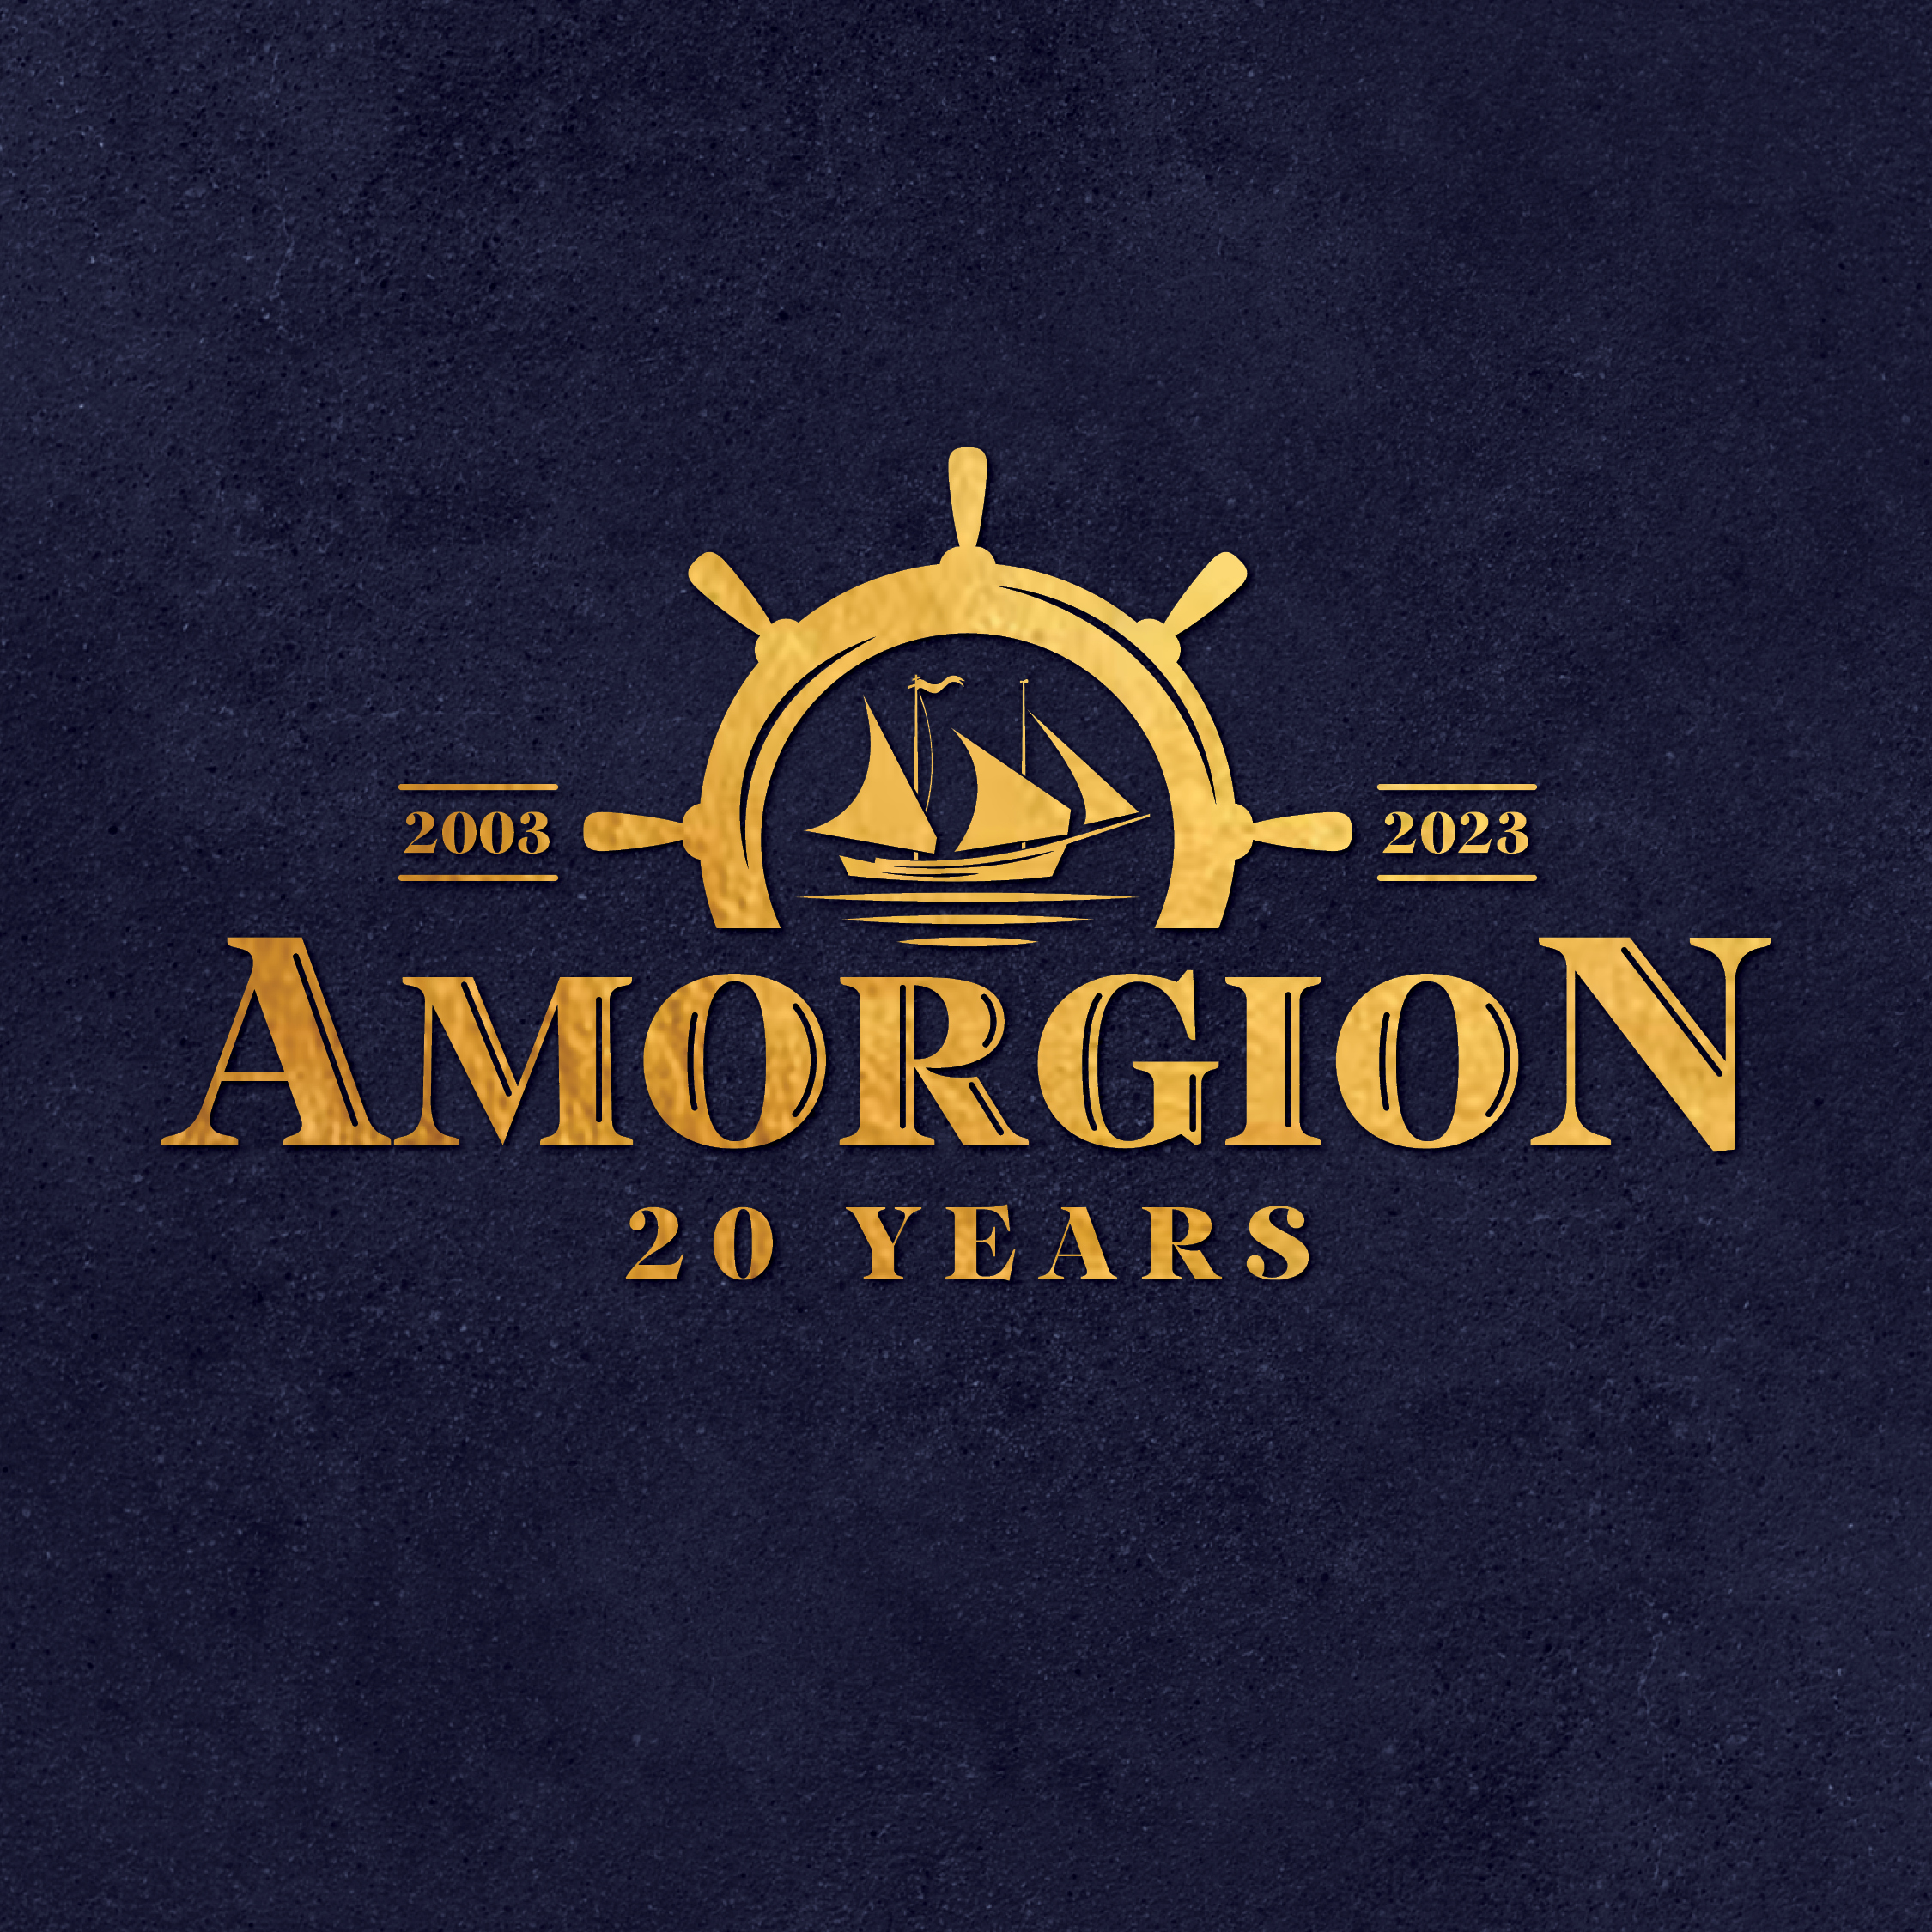 Amorgion NEW LOGO 20 Years5